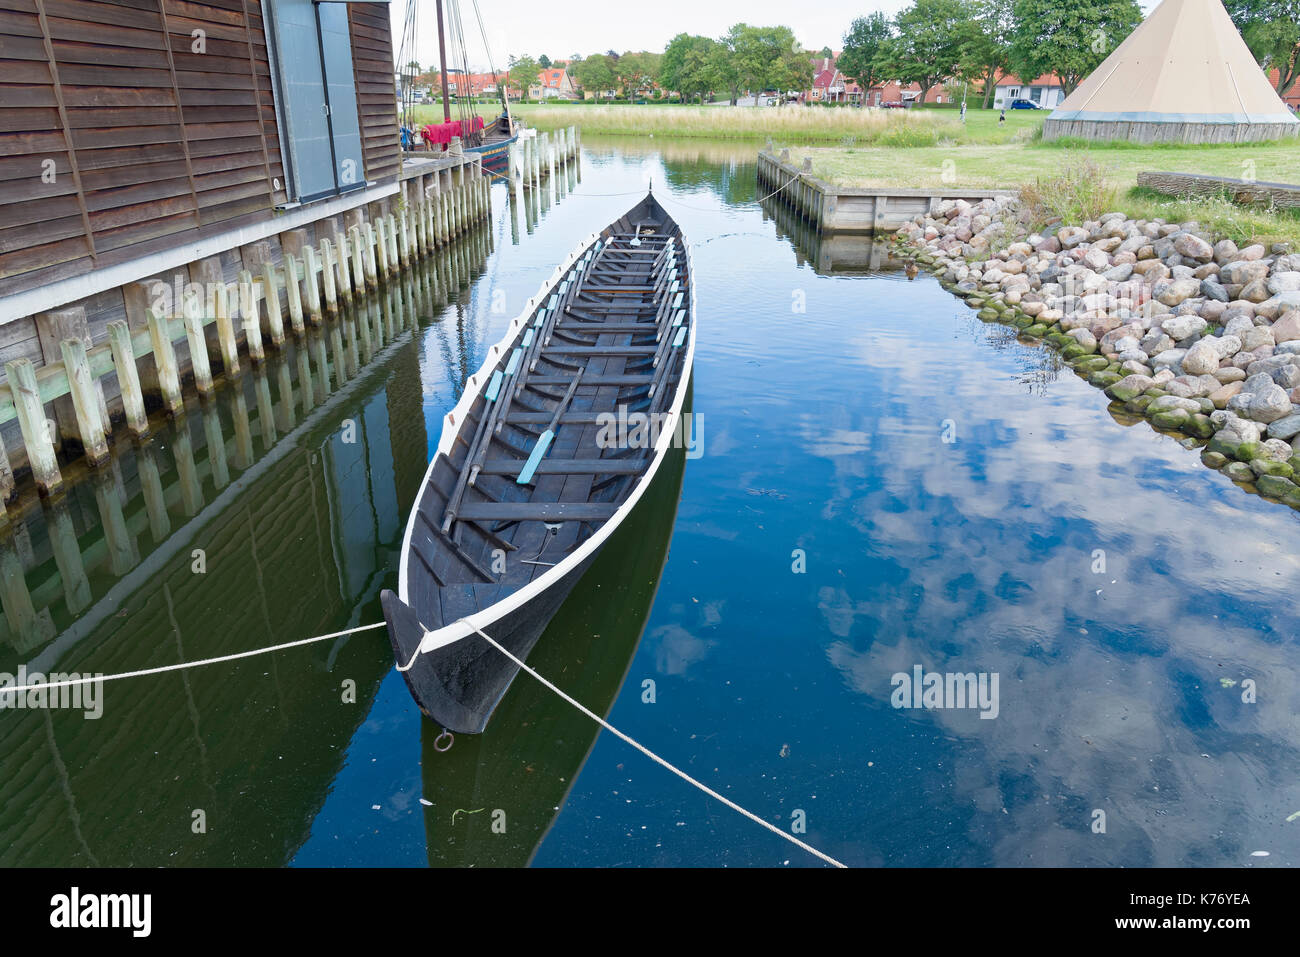 Roskilde, Danimarca - 01 agosto 2015: replica di barca antica e visitatori al di fuori della nave vicking museum Foto Stock